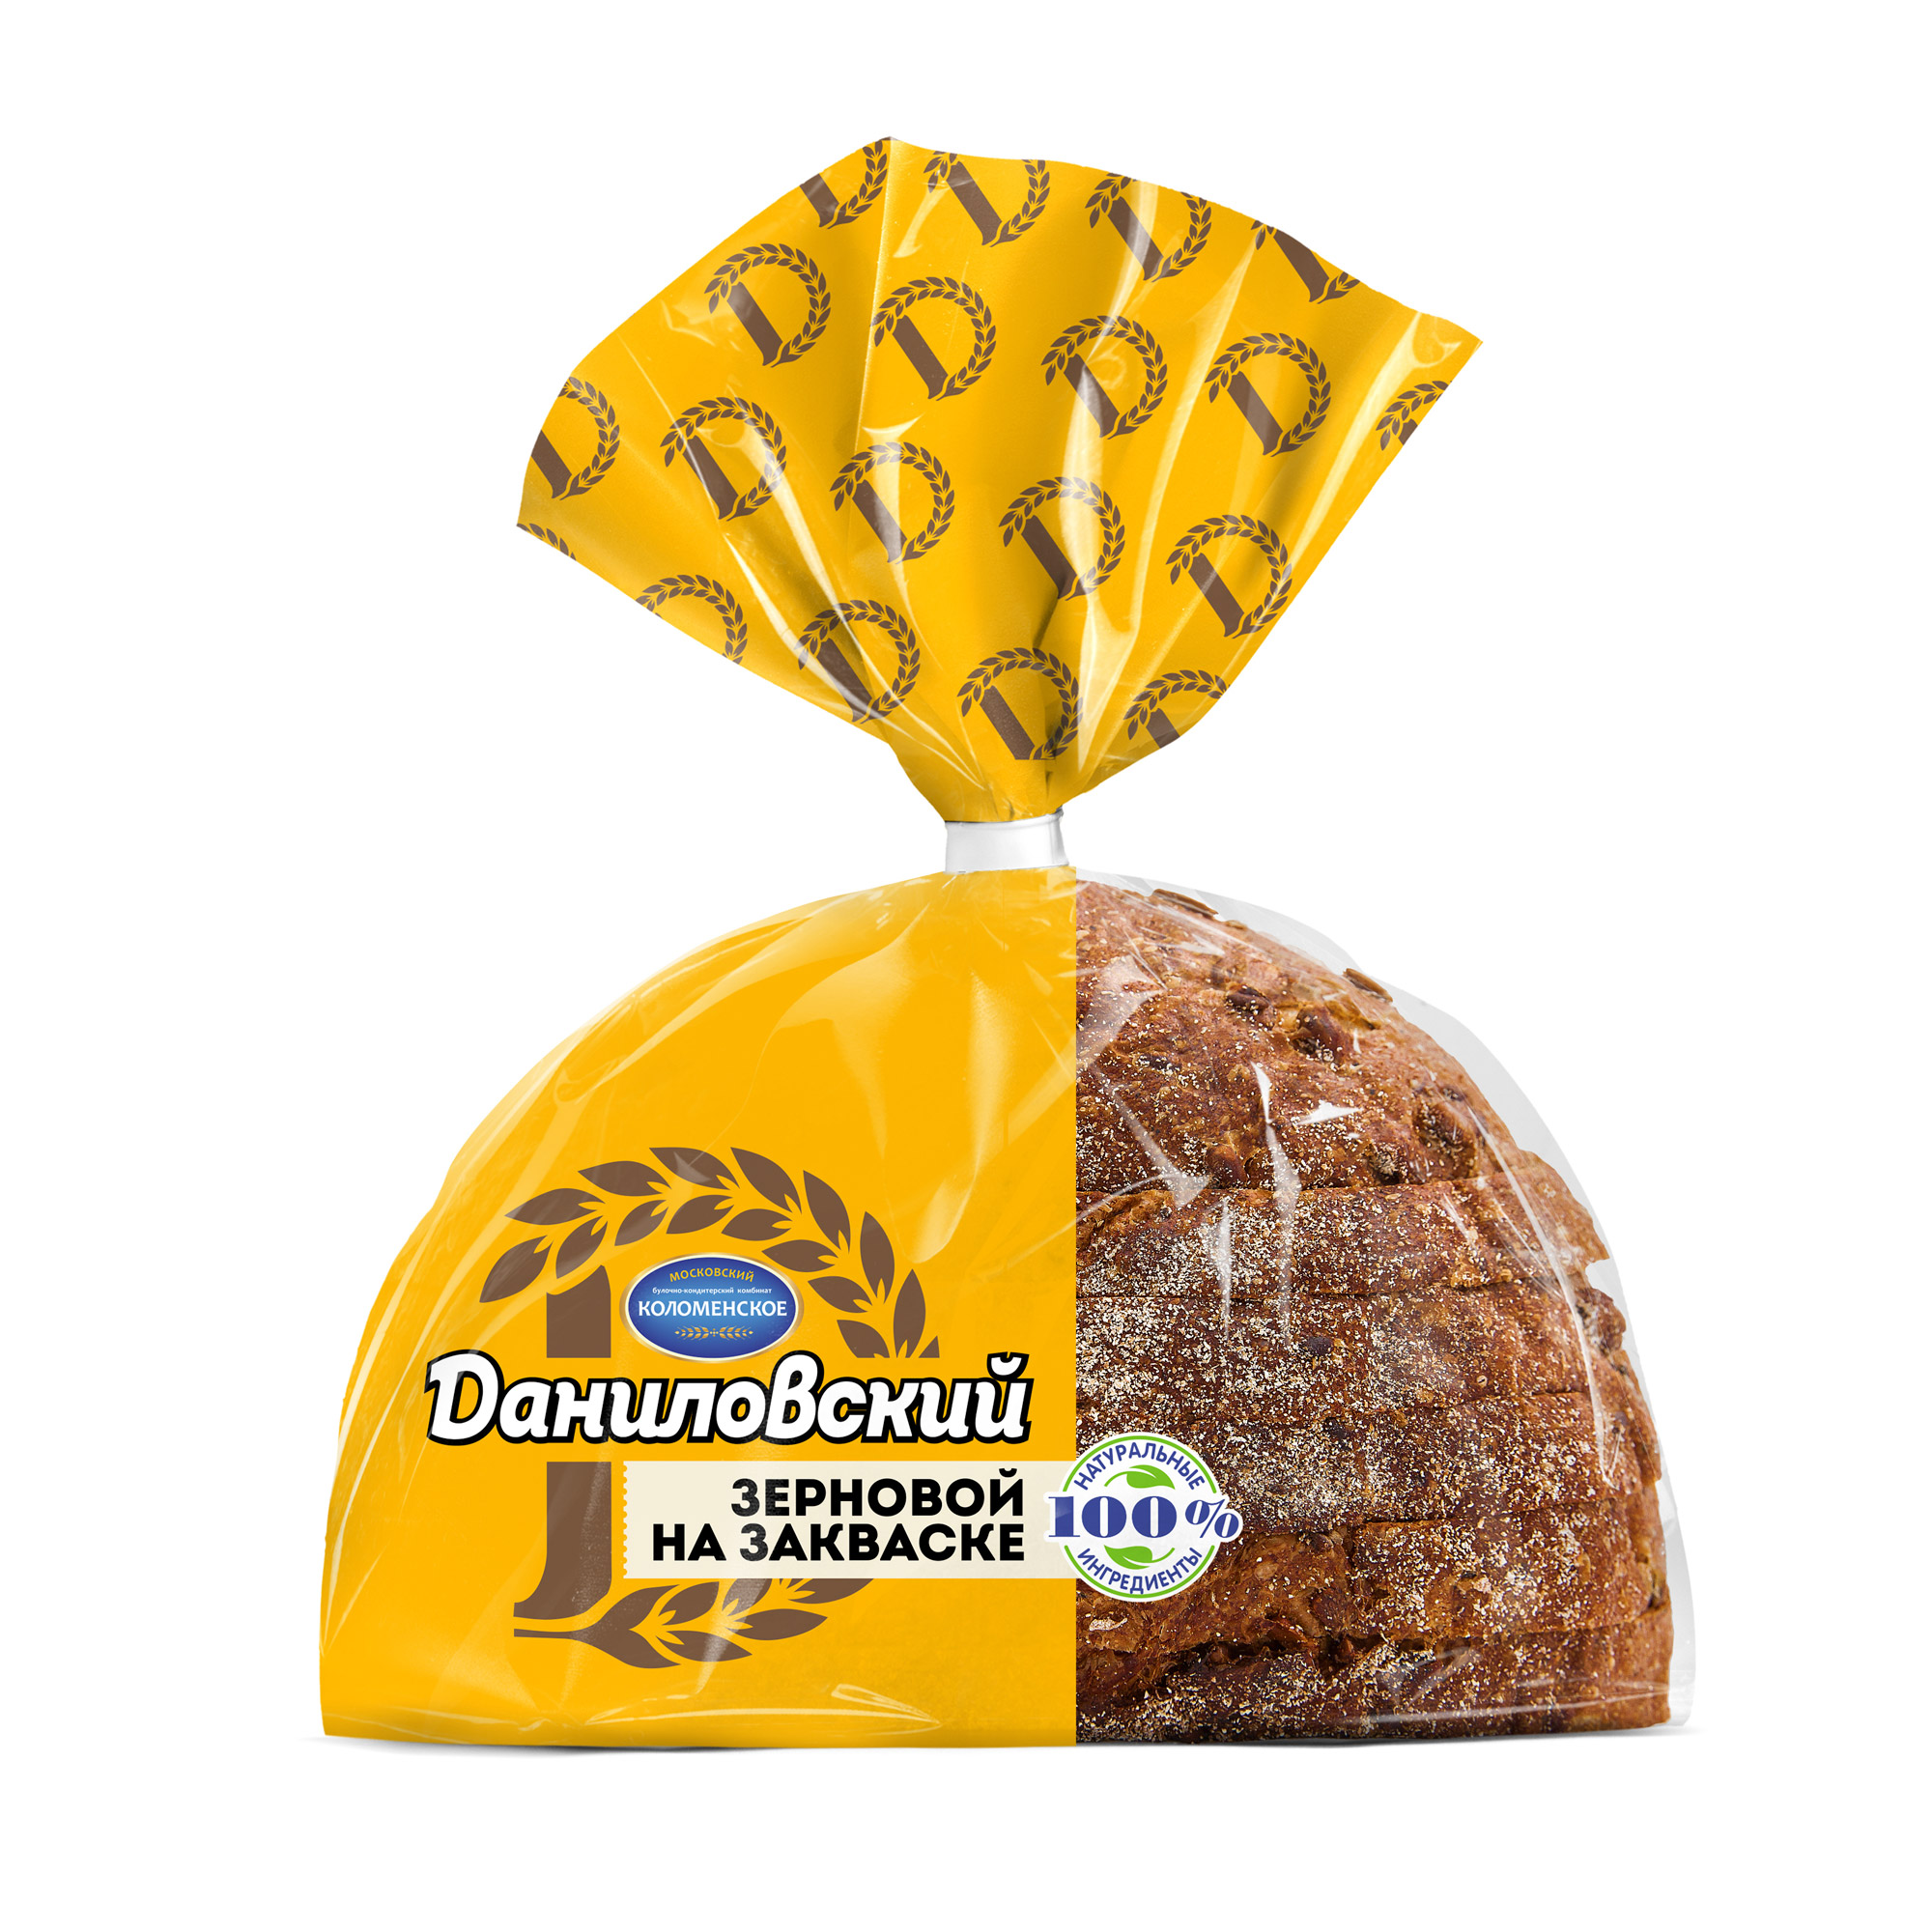 Хлеб Даниловский зерновой в нарезке 300 г хлеб даниловский нарезка 300 г